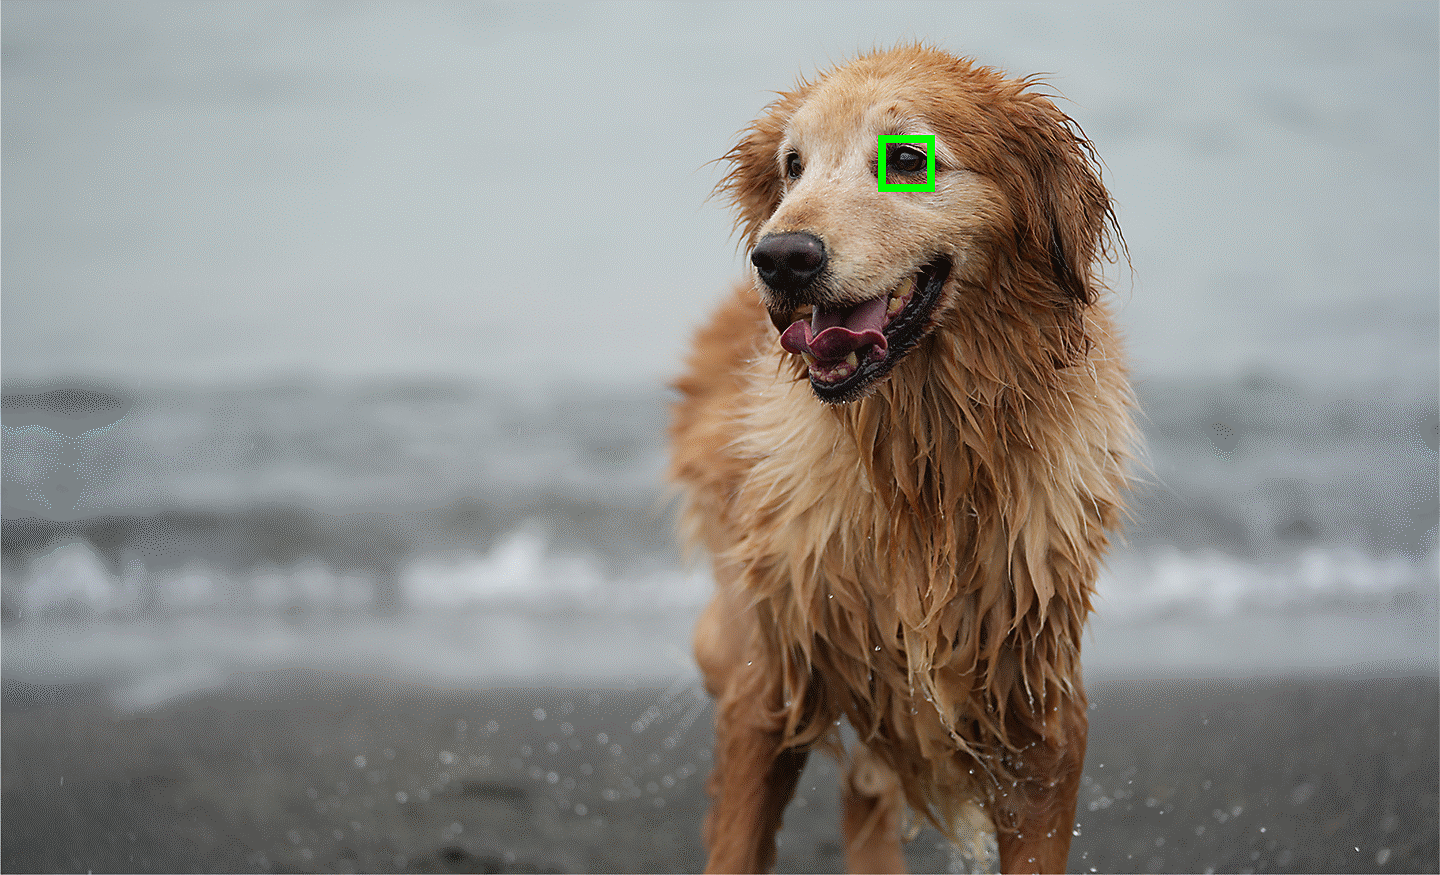 Et bilde som viser bruk av AF i sanntid på dyreøyne, med fokus på øynene til hunden som utgjør motivet